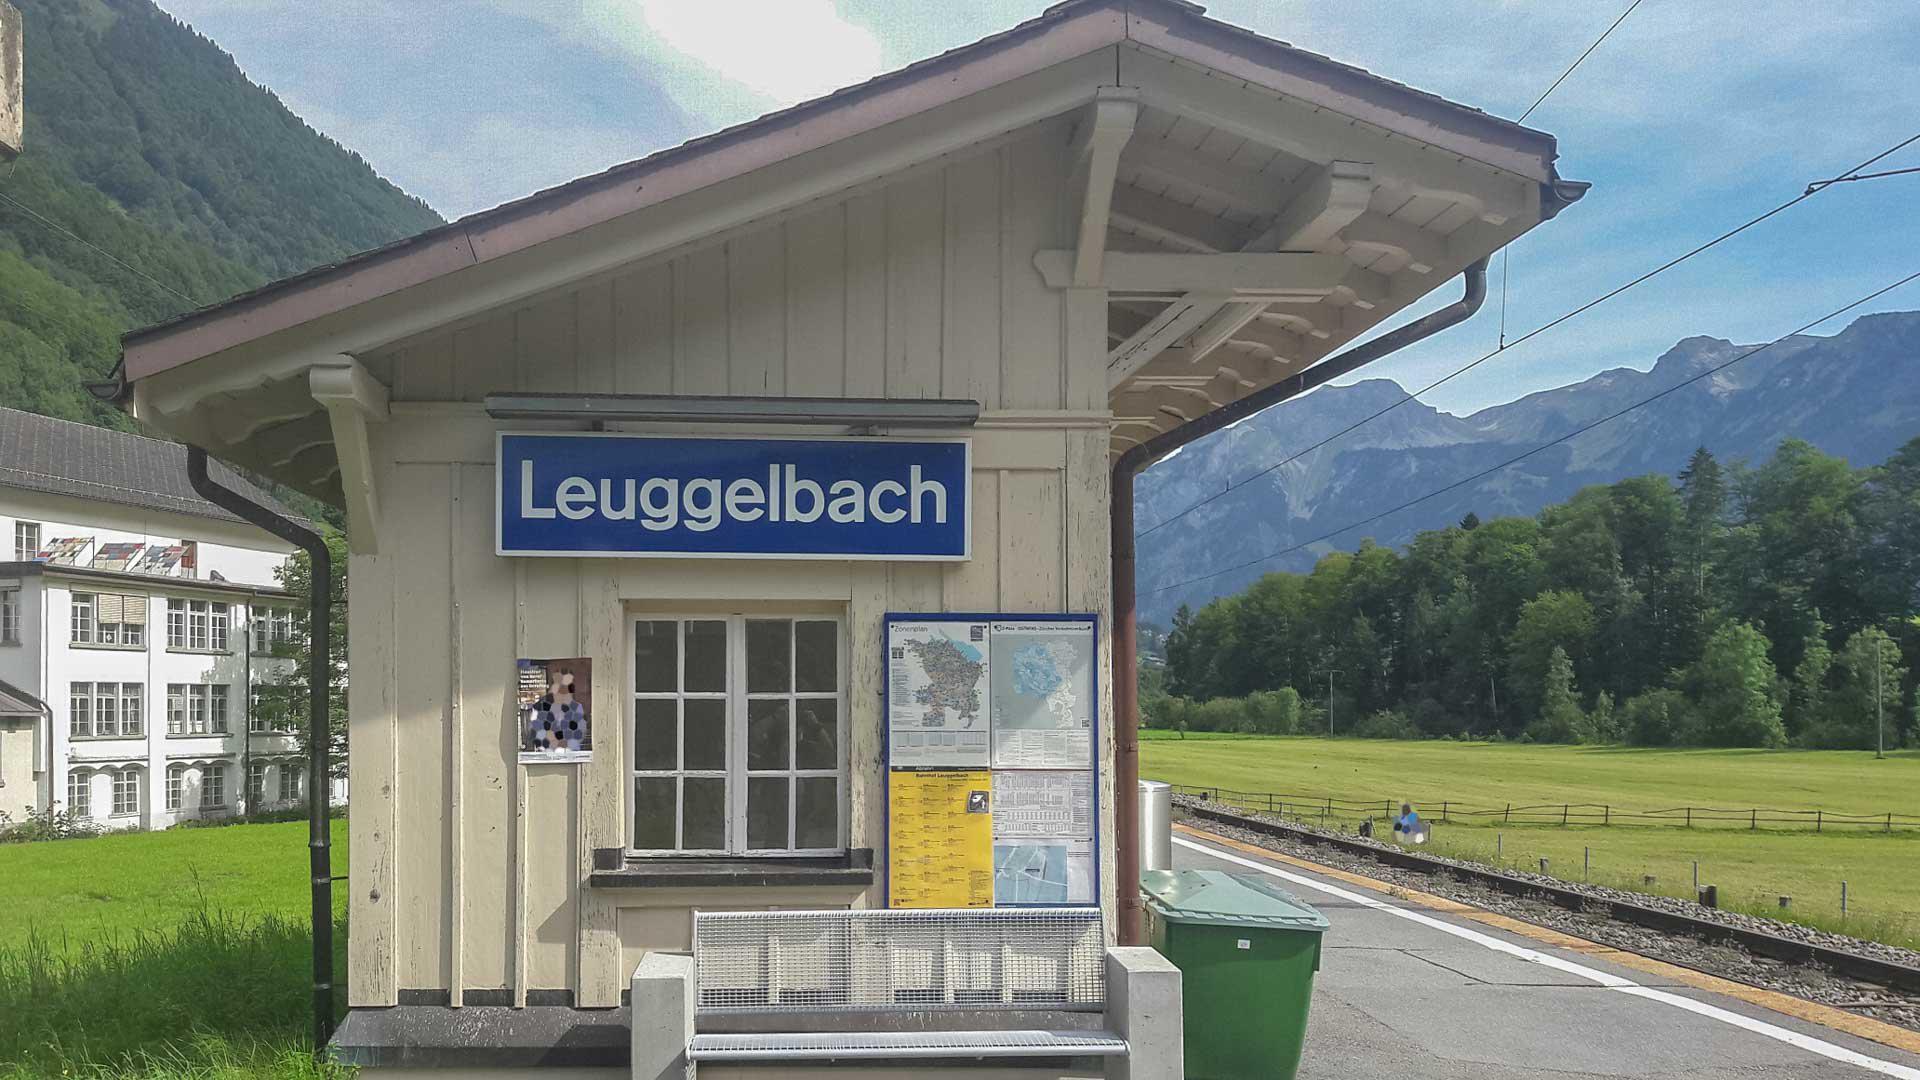 Leuggelbach